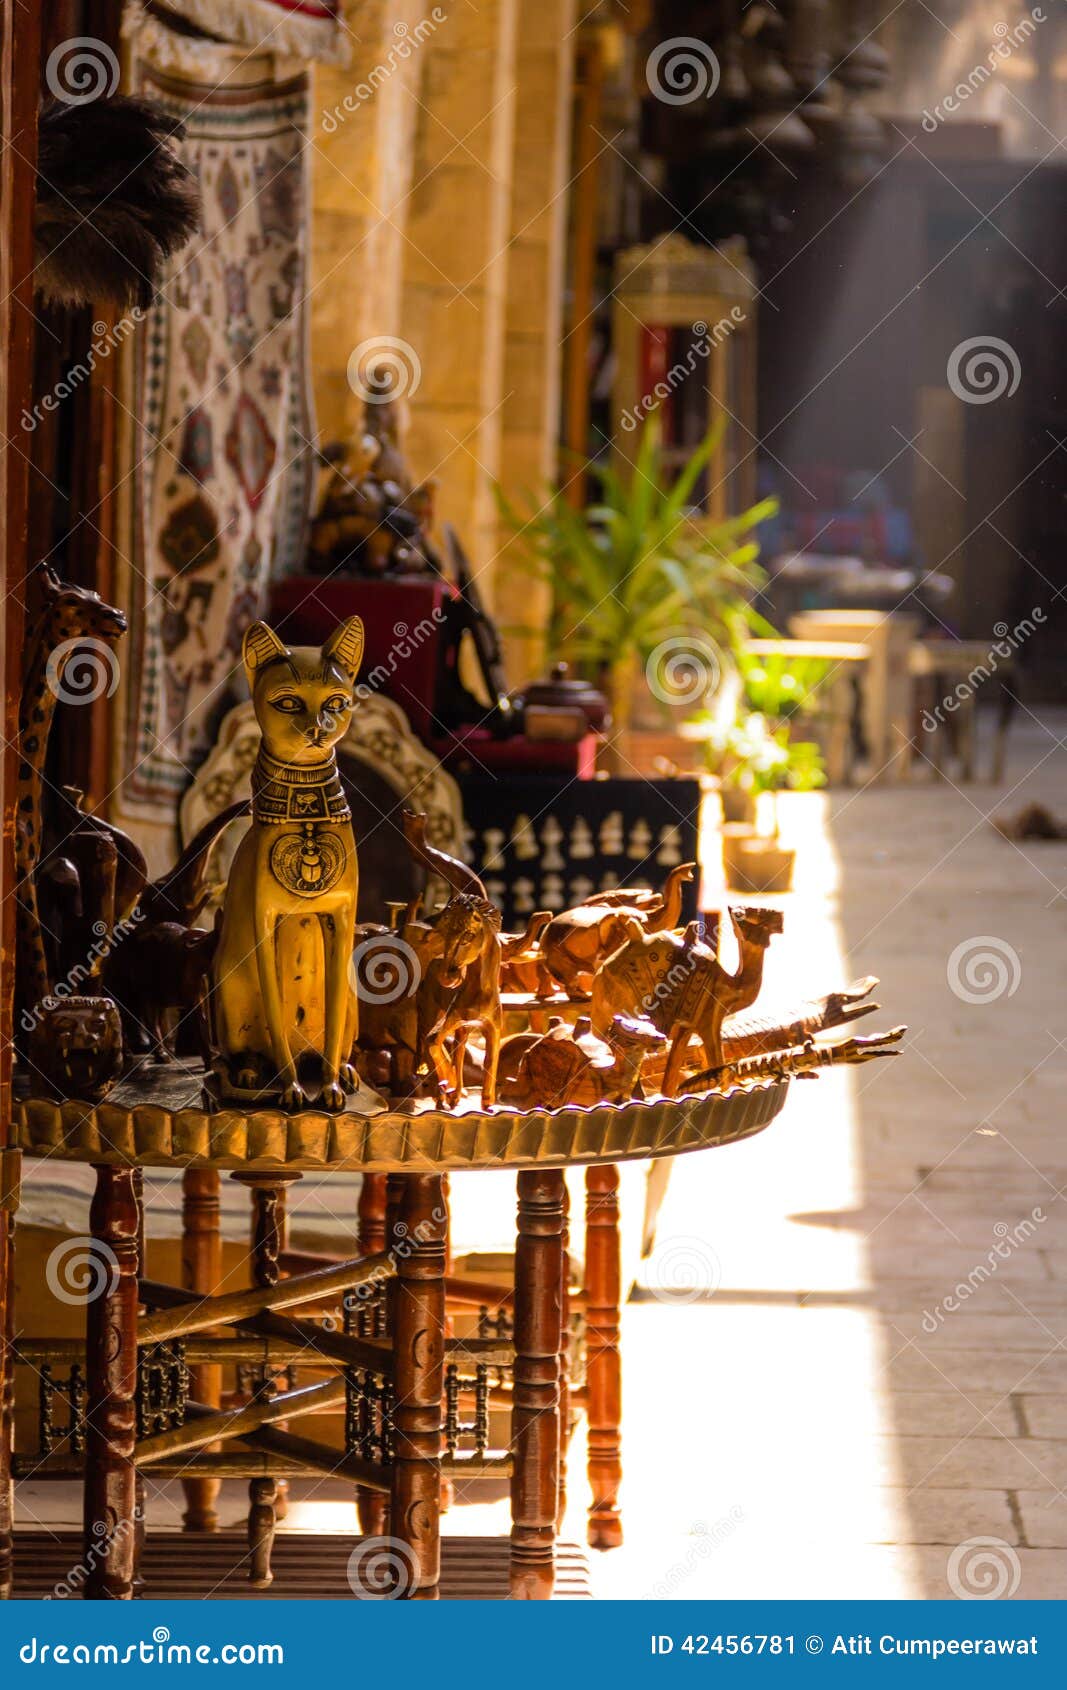 ancient cat statue souvenirs at khan el-khalili bazaar, cairo i